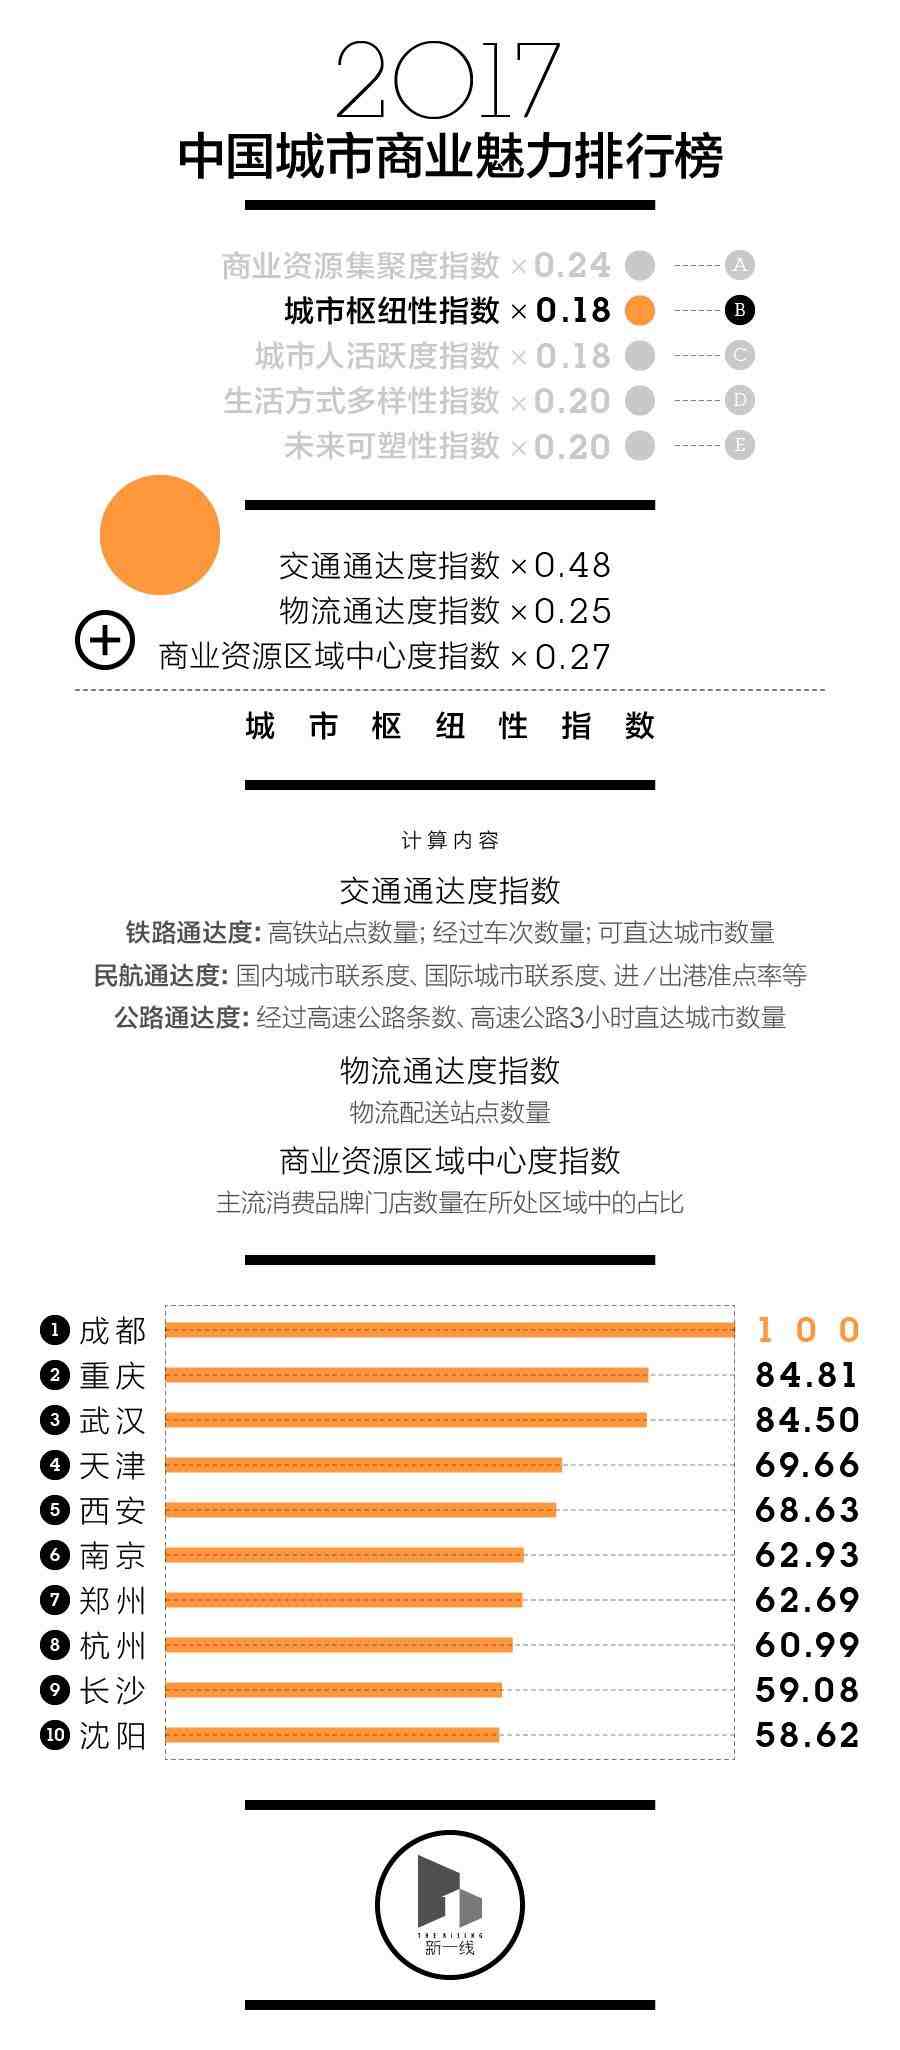 中国一二线城市总人口_中国城市人口变化:一二线城市吸引力强,深圳10年增长超